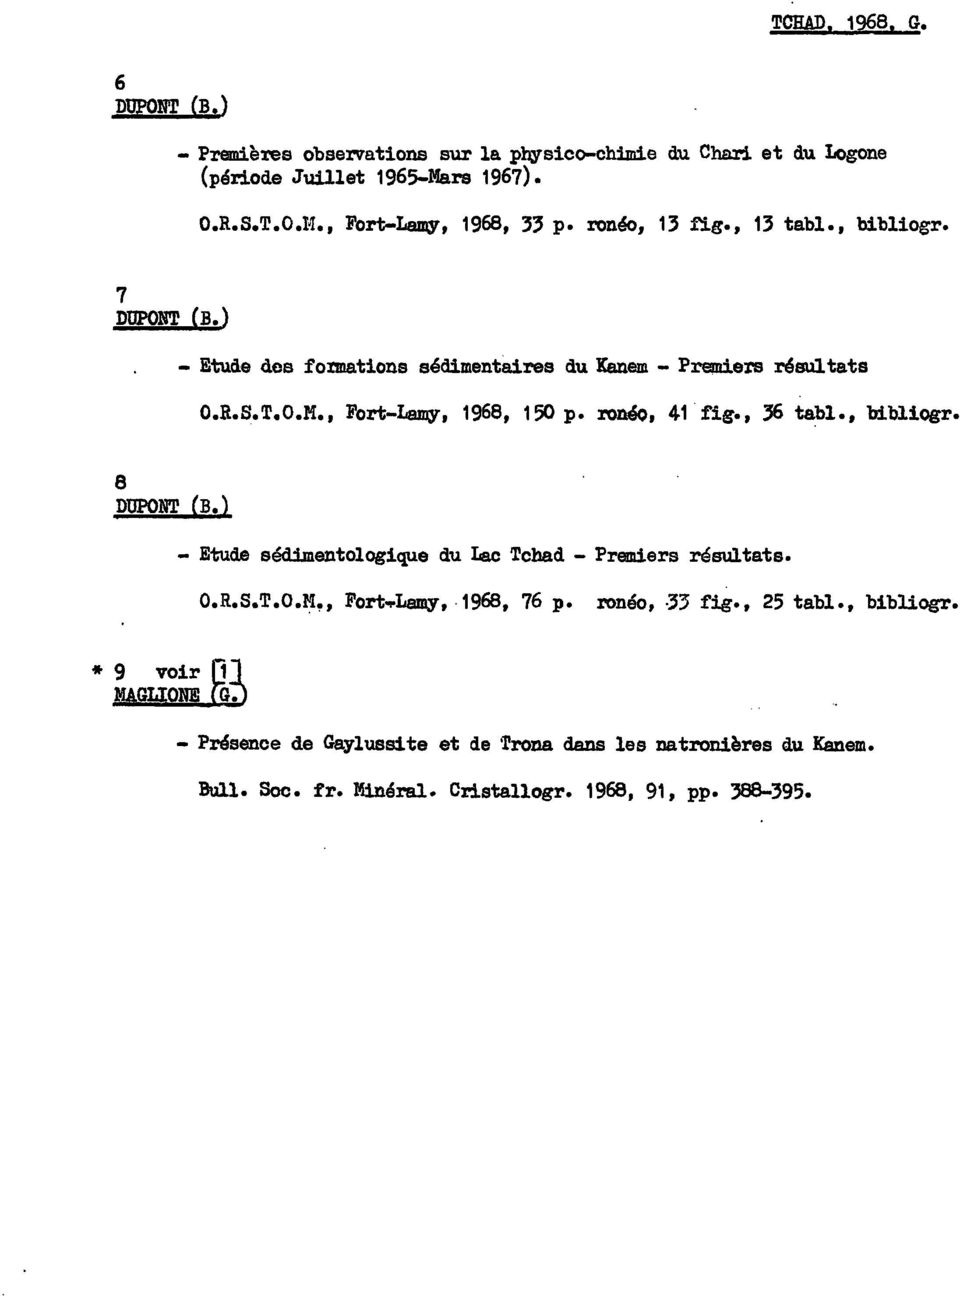 , Fort-Lamy, 1968, 150 p. ronéo, 41 fig., 36 tabl., bi.bliogr. 8 DUPONT (B.) - Etude sédimentologique du Lac Tchad - Premiers résultats. O.R.S.T.O.l:i~, Fort"l'Lamy, 1968, 76 p.